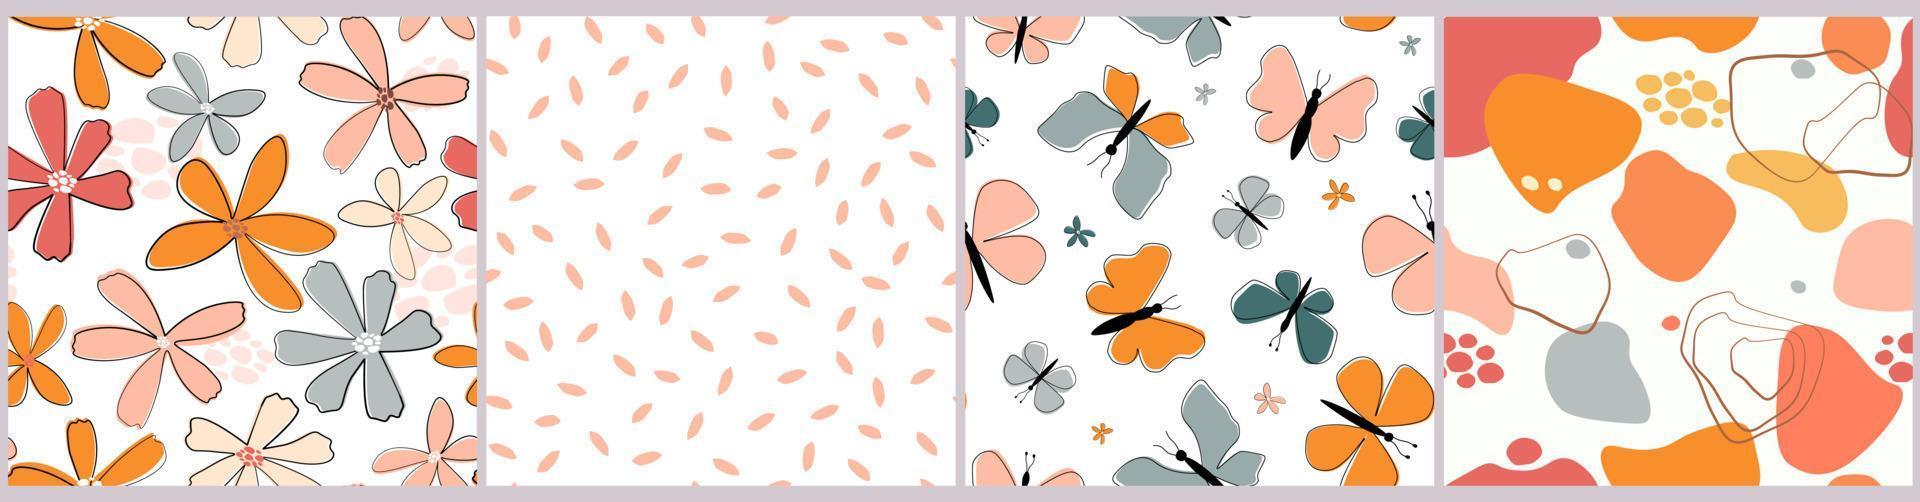 een set naadloze patronen met een zomerse bloemenprint. kleurrijke vlinders, eenvoudige abstracte vormen. vectorafbeeldingen. vector